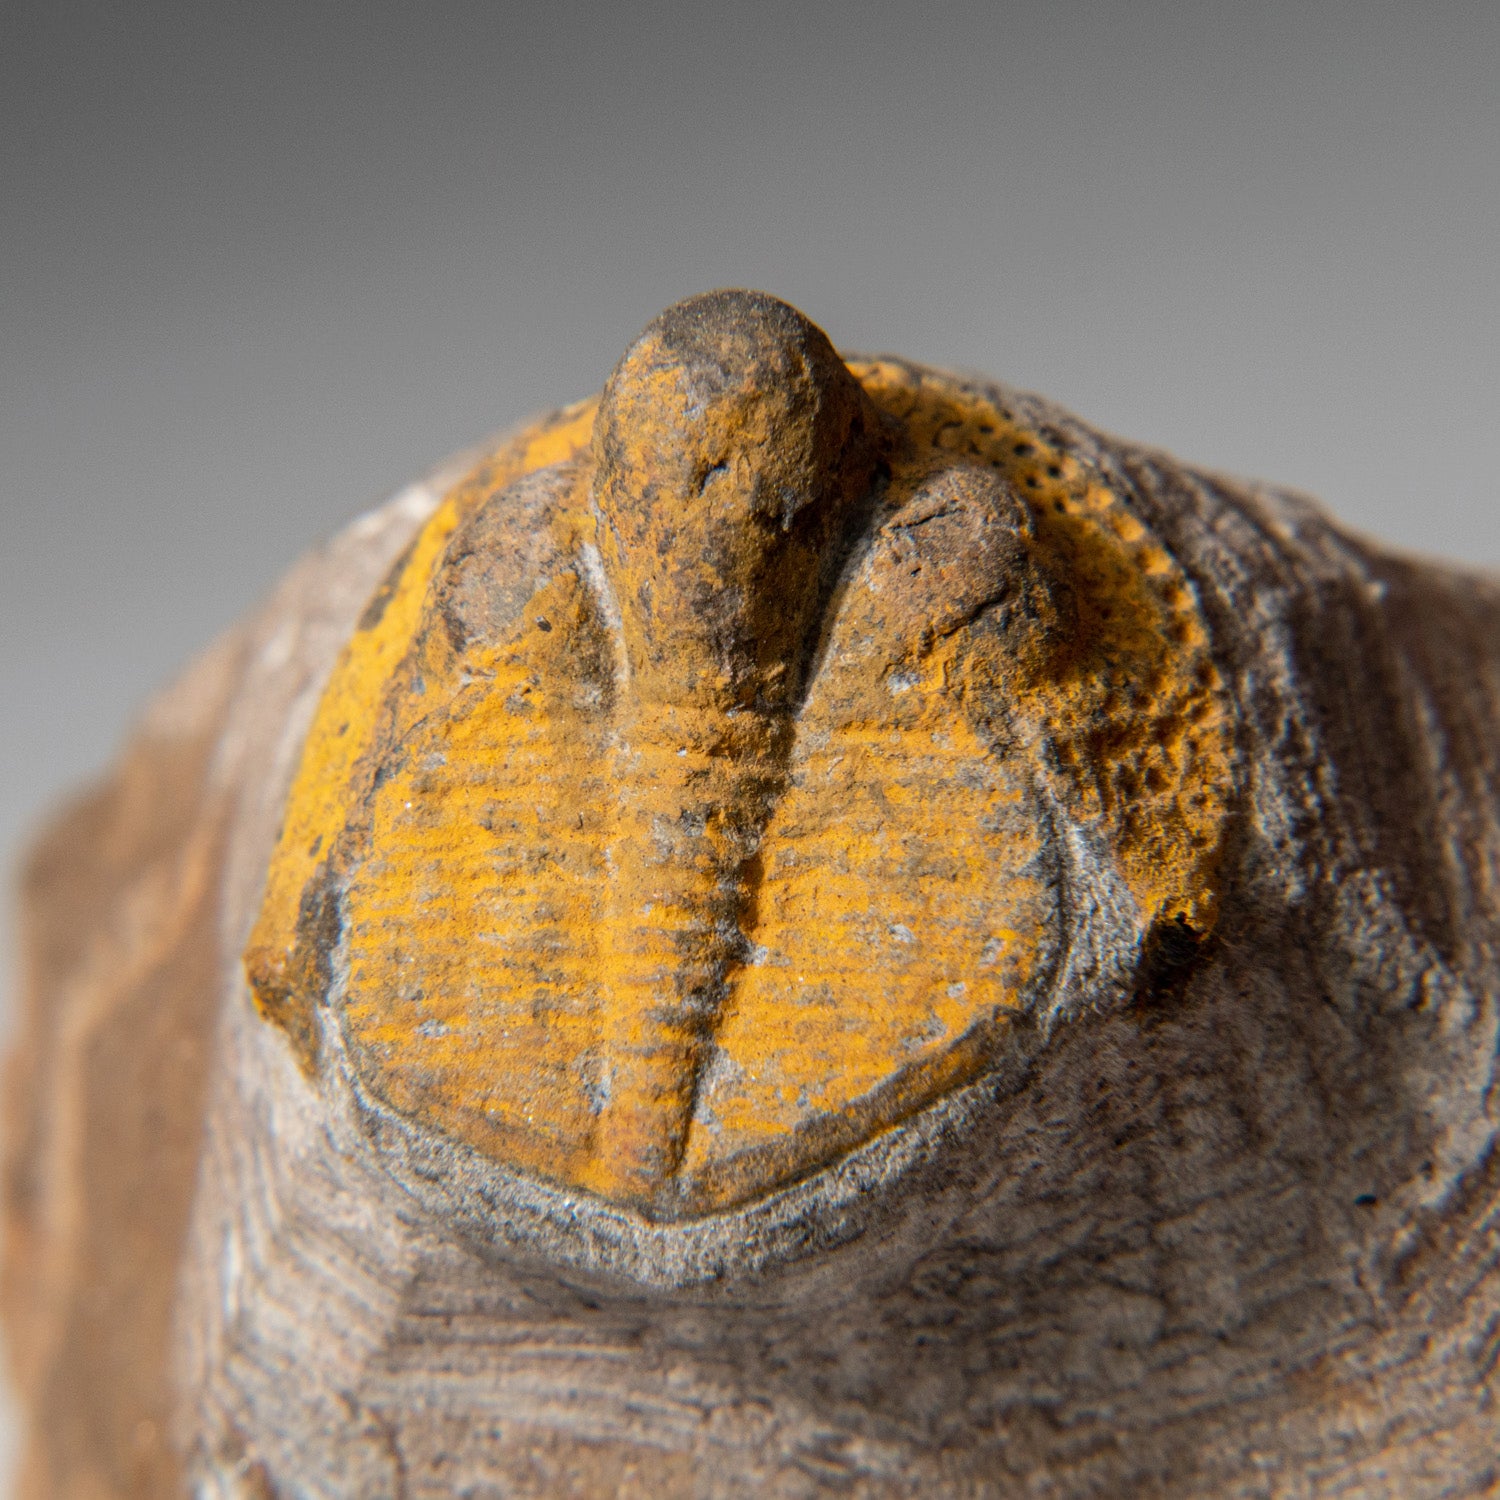 Genuine Trilobite Fossil (Ptychopariida) on Matrix (97.5 grams)